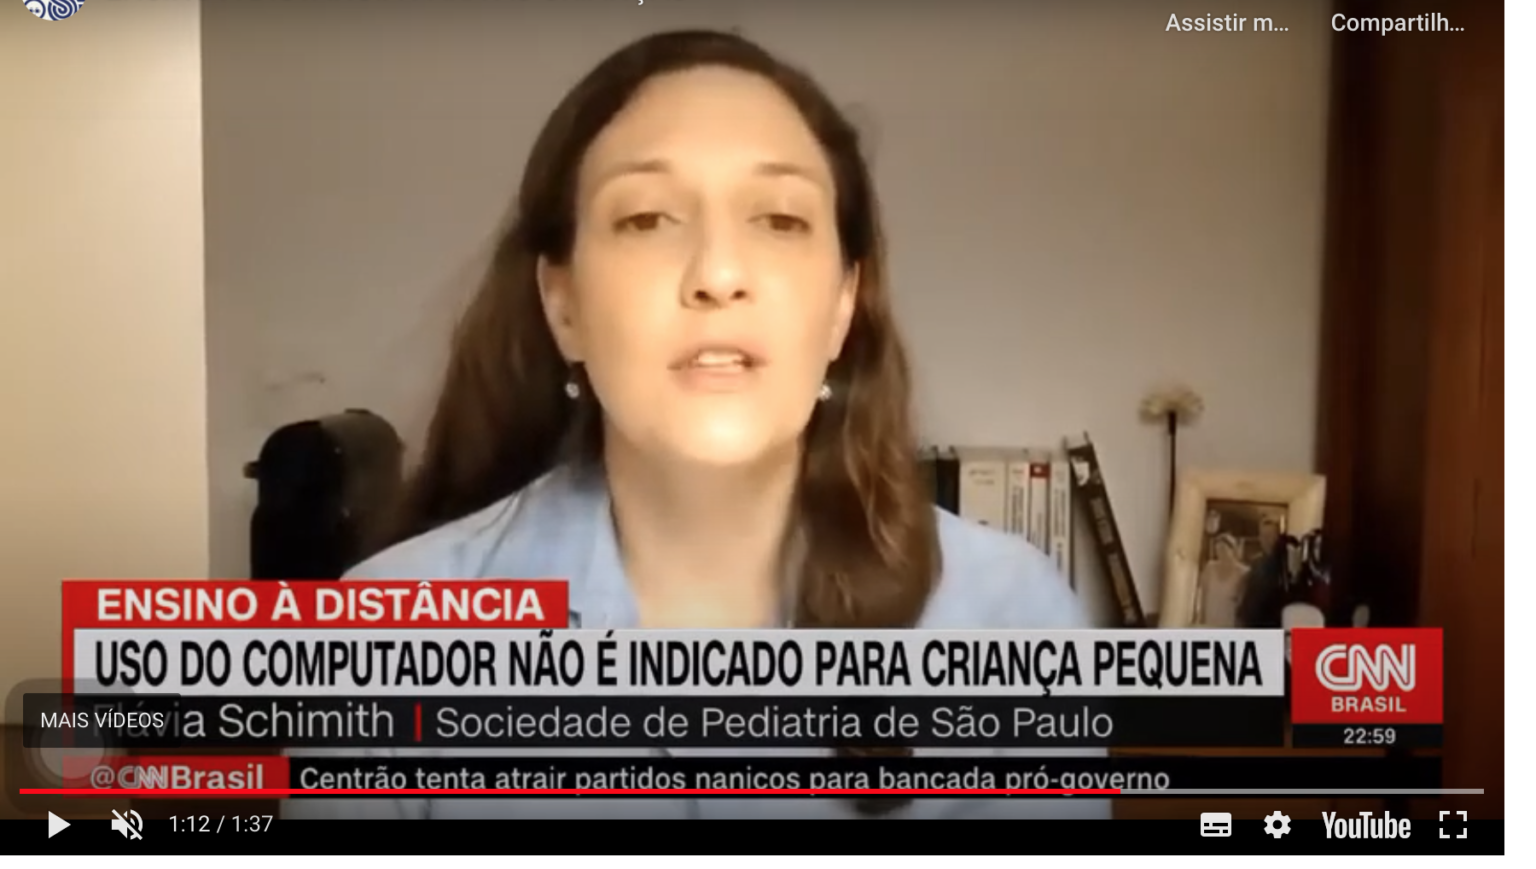 CNN Brasil (SPSP)